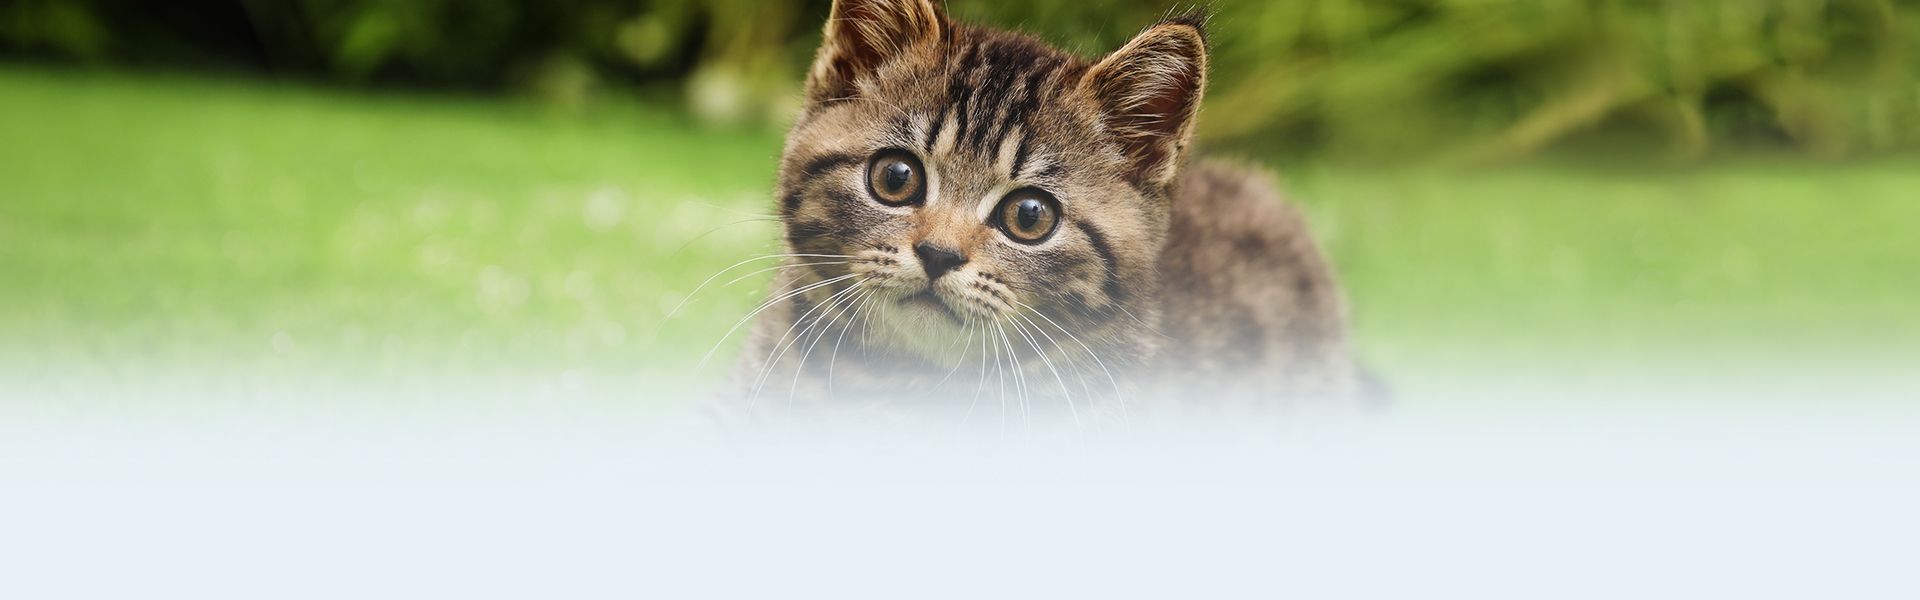 cute little tabby kitten on the green grass